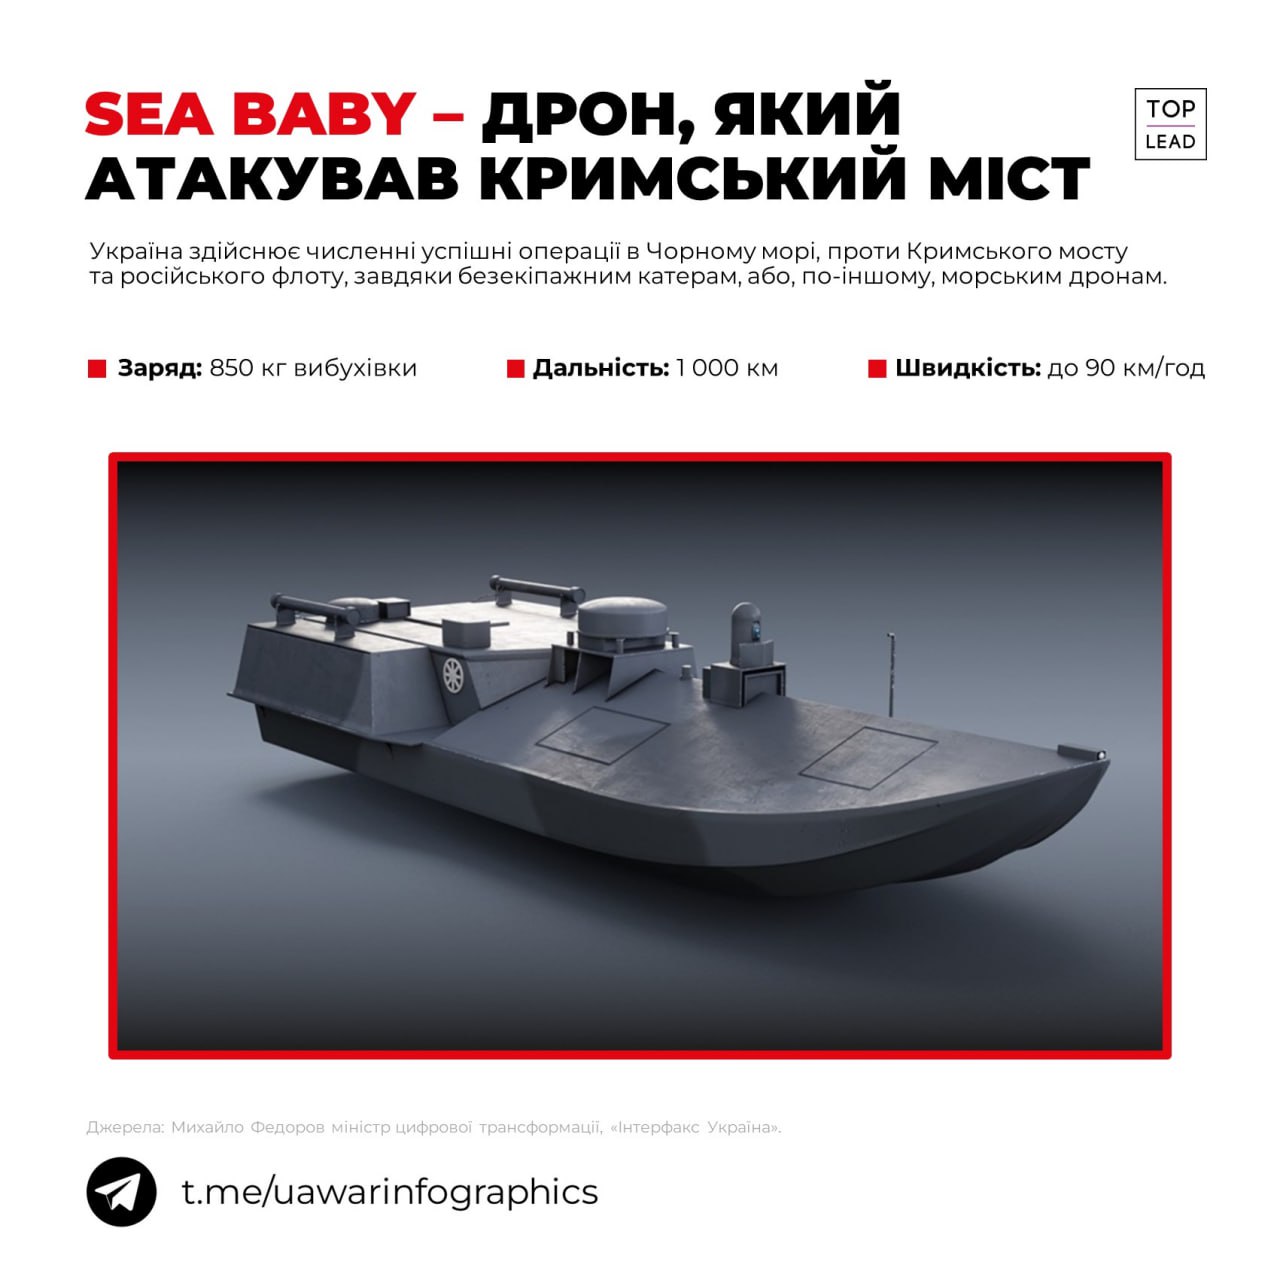 Sea Baby - очистити українське море від російського мотлоху